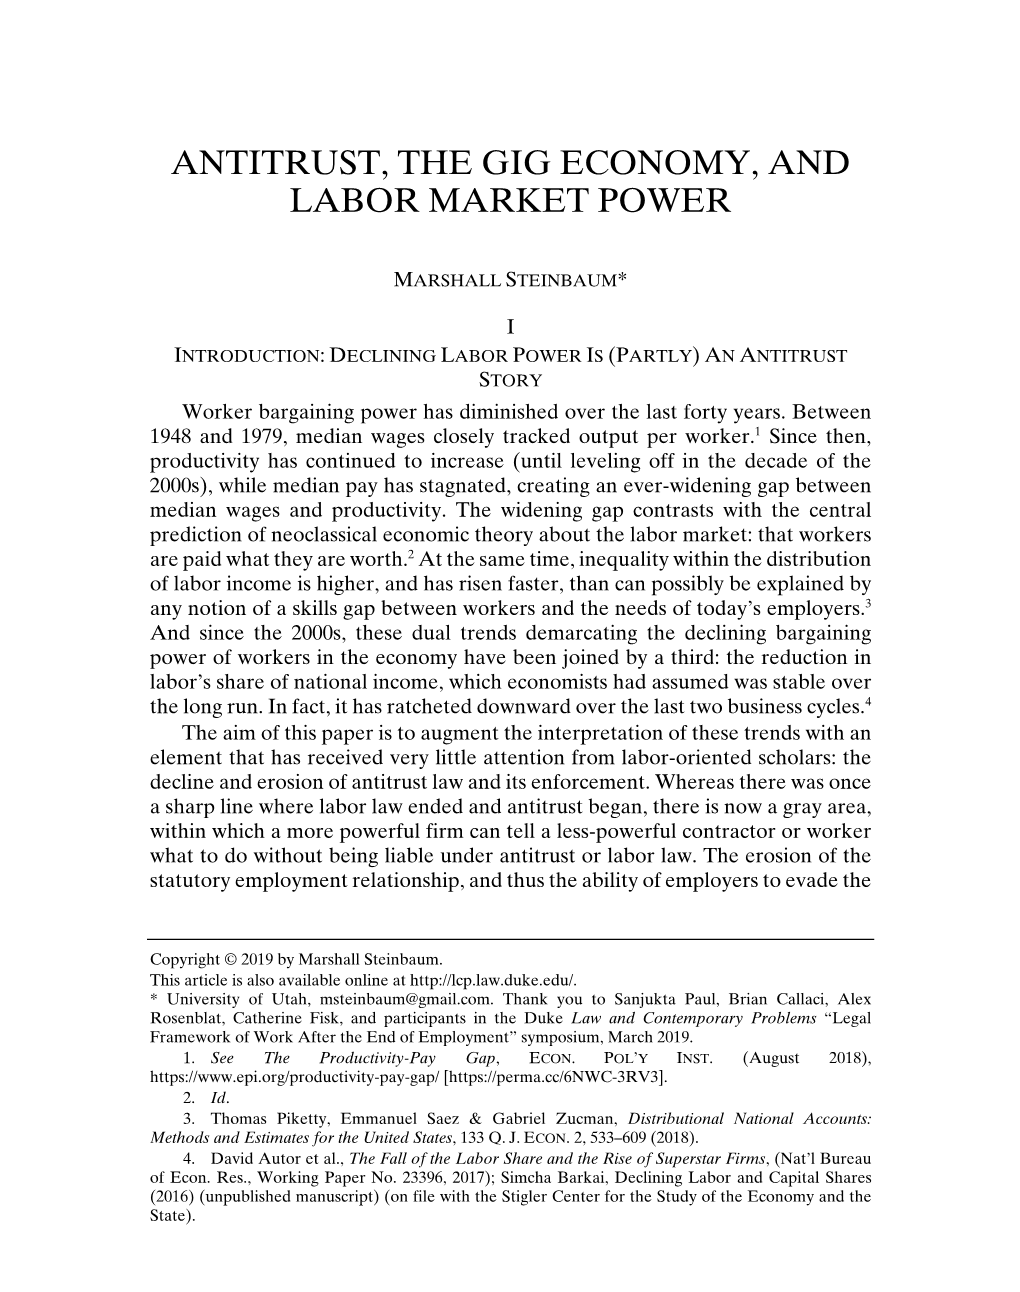 Antitrust, the Gig Economy, and Labor Market Power